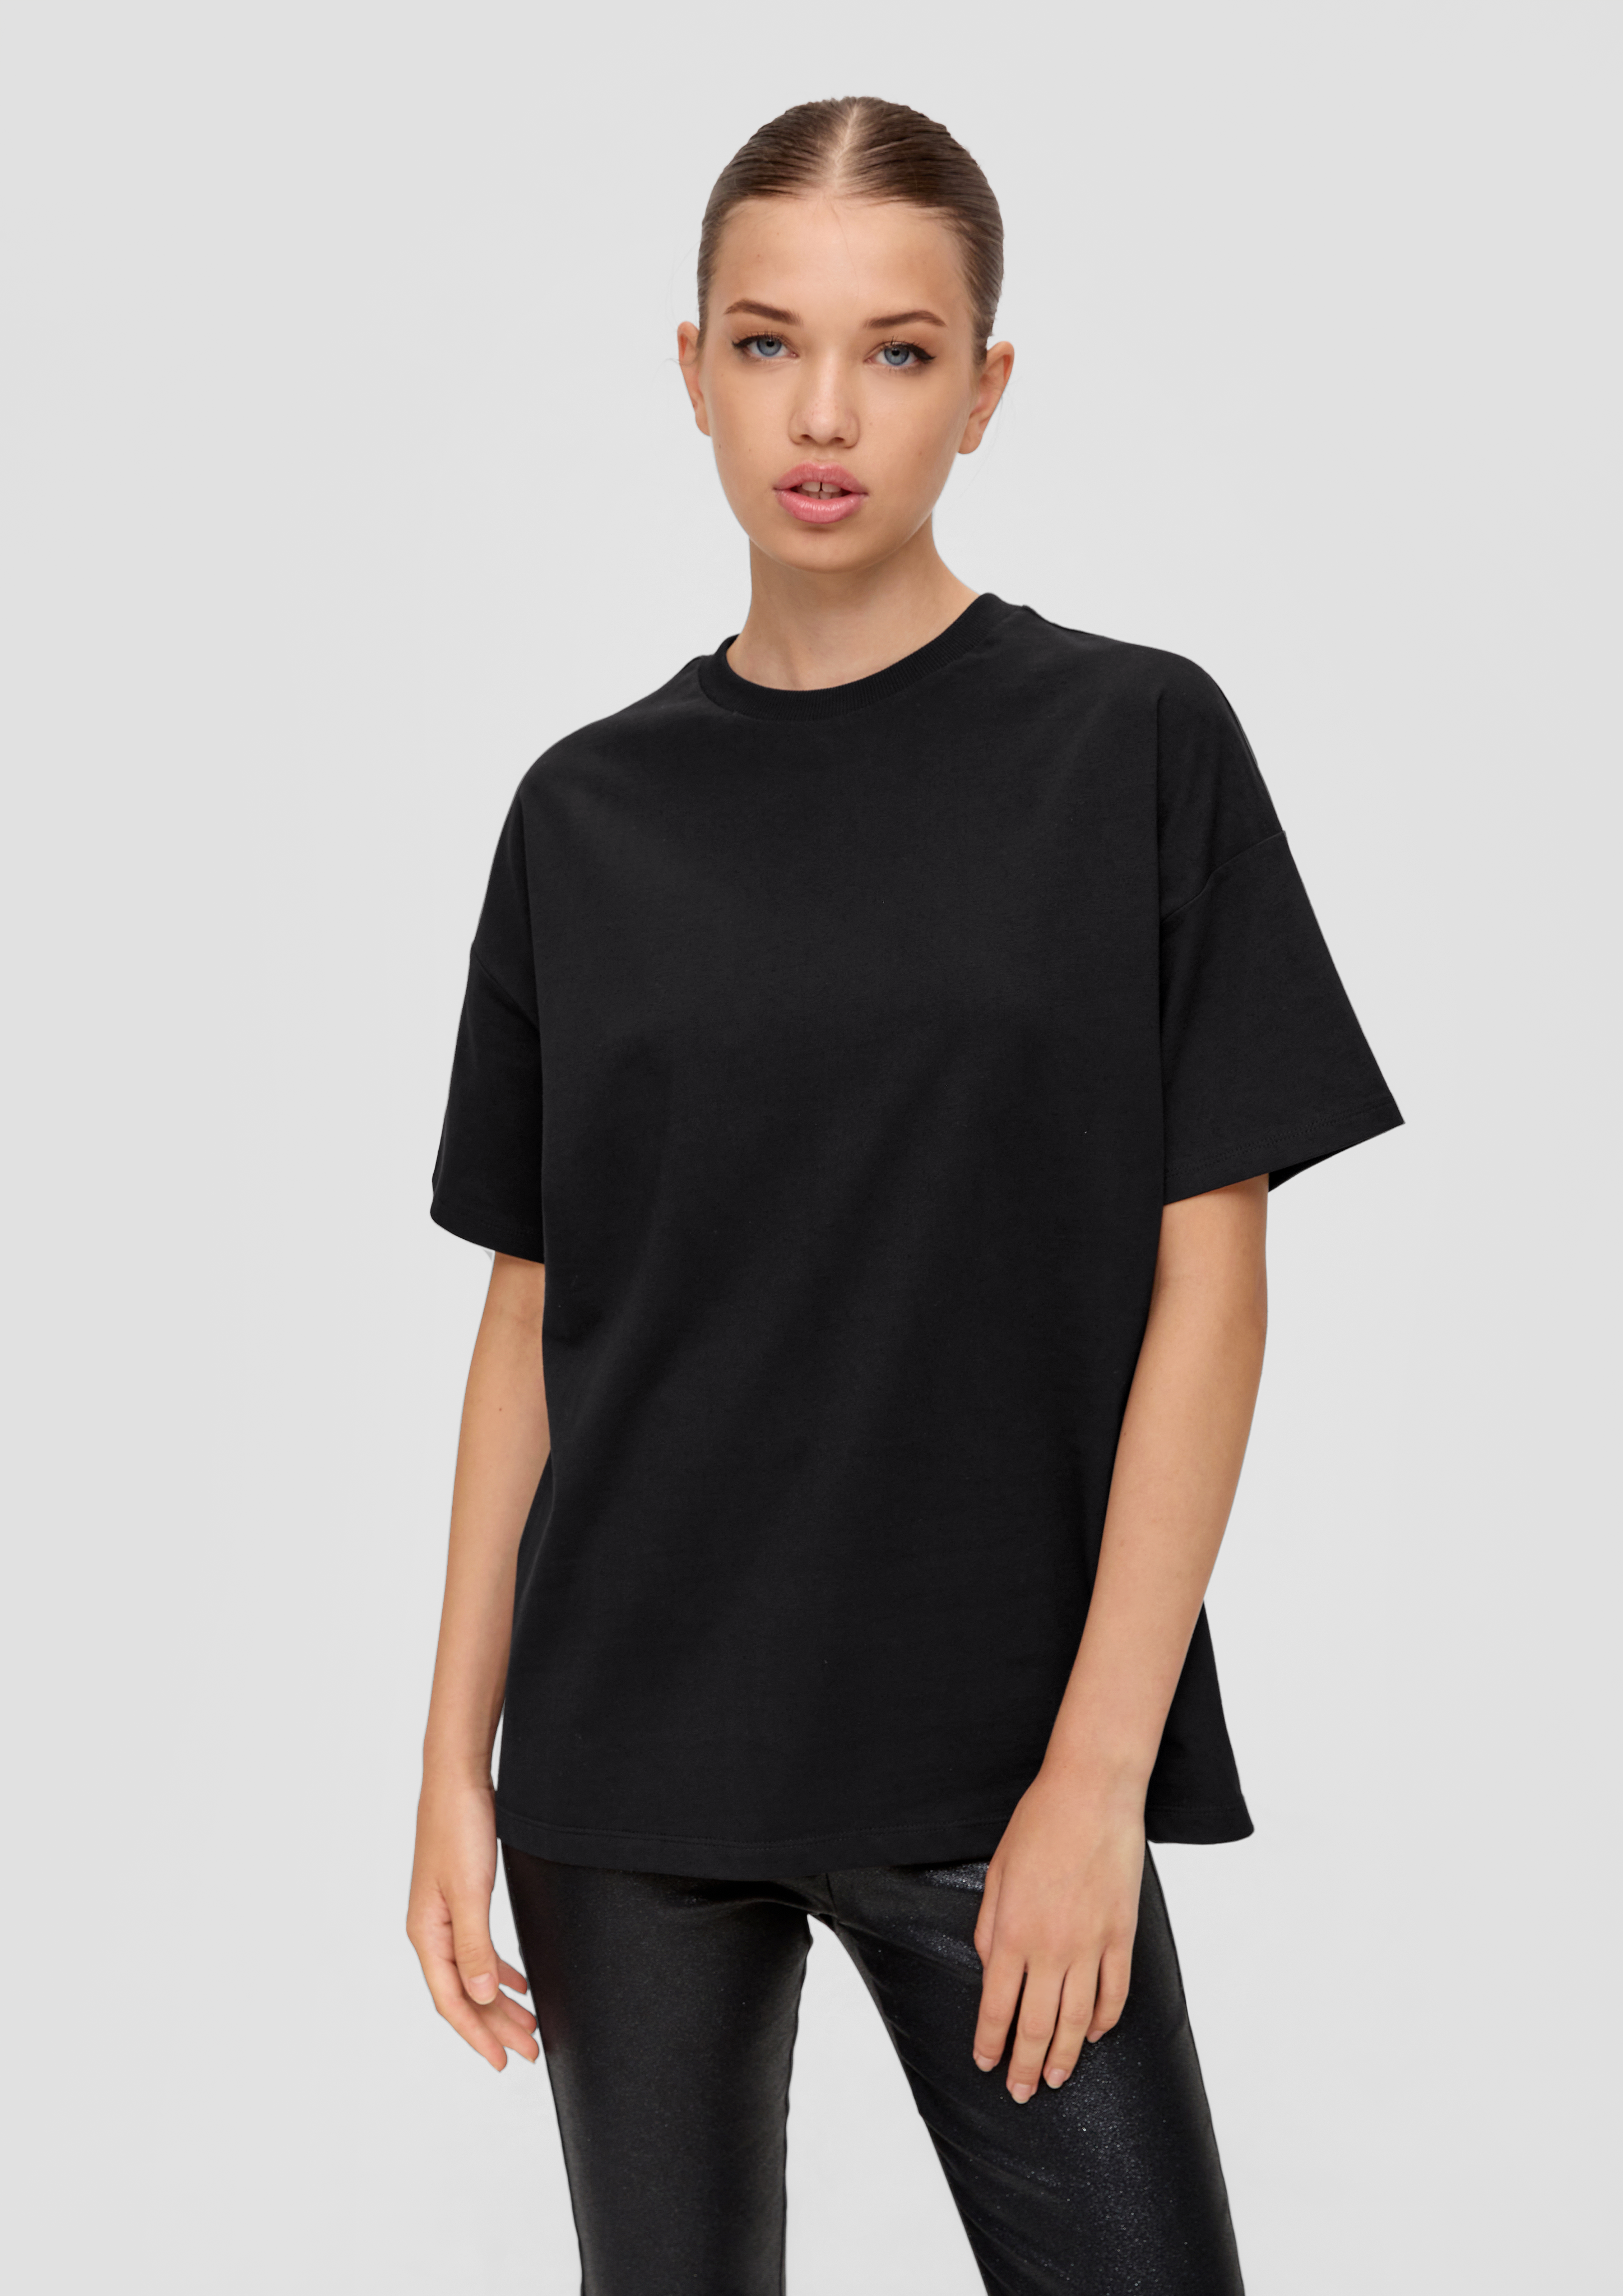 QS | - Rückenprint x schwarz Baumwoll-Shirt mit ELIF